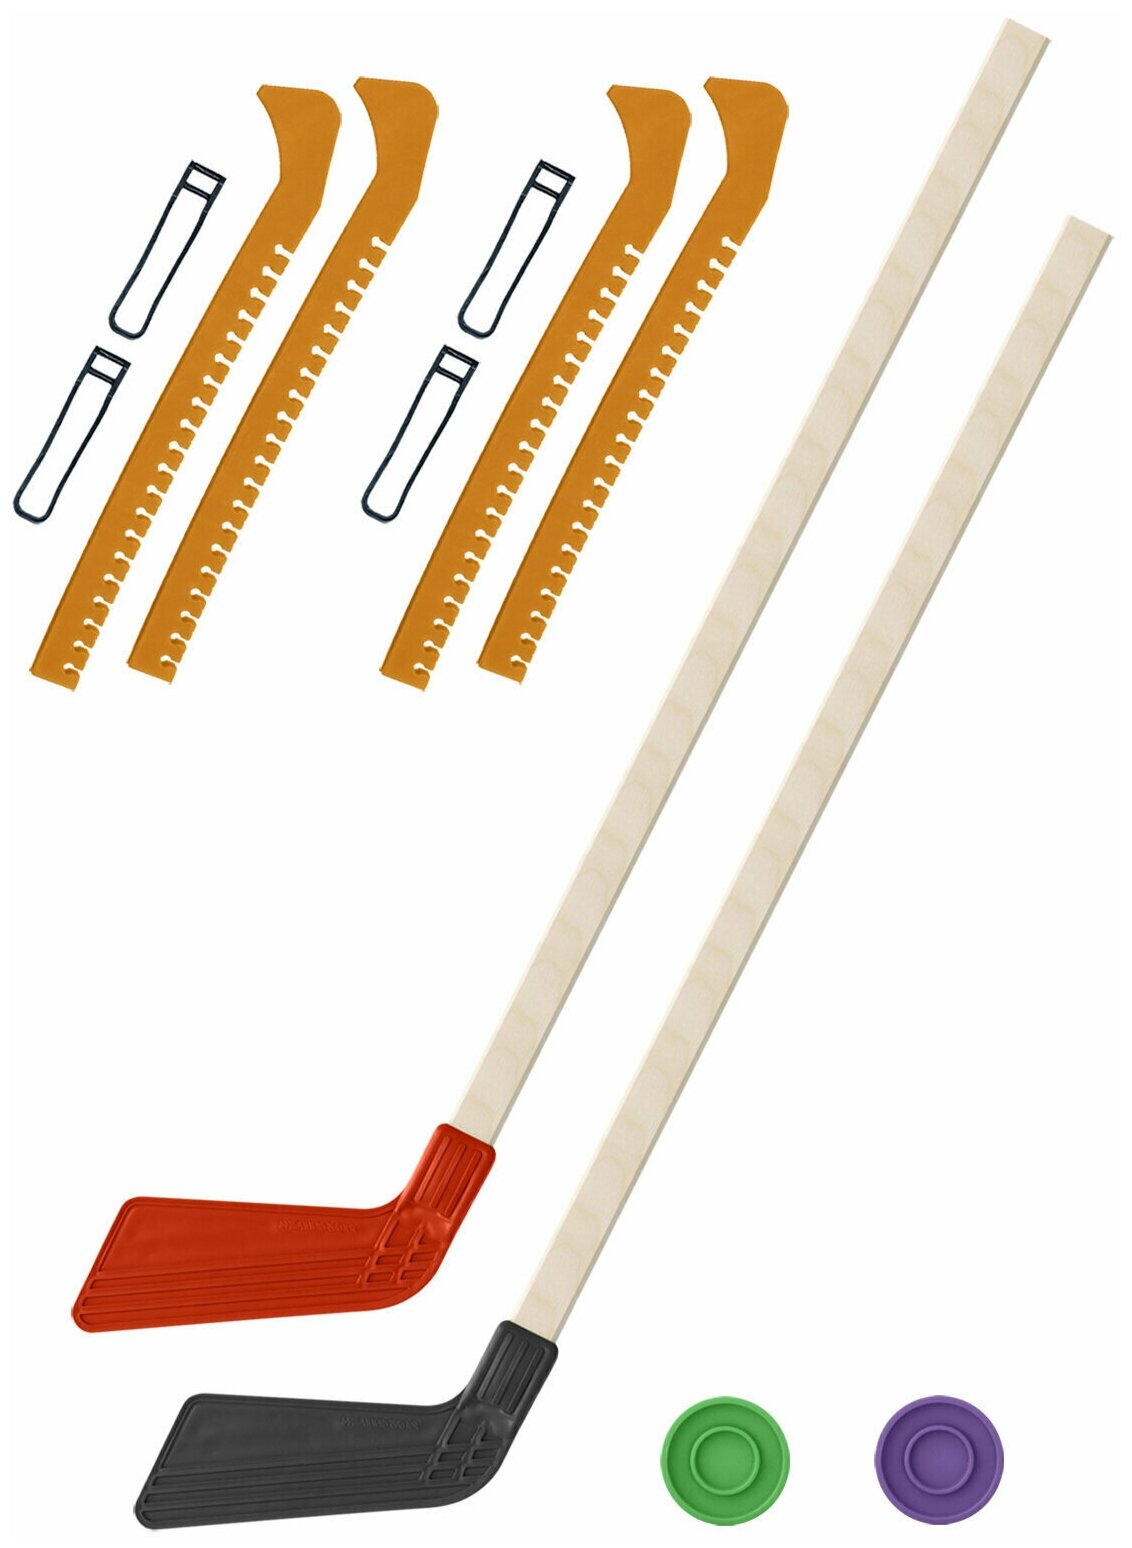 Детский хоккейный набор для игр на улице Клюшка хоккейная детская 2 шт красная и чёрная 80 см.+2 шайбы + Чехлы для коньков желтые - 2 шт.